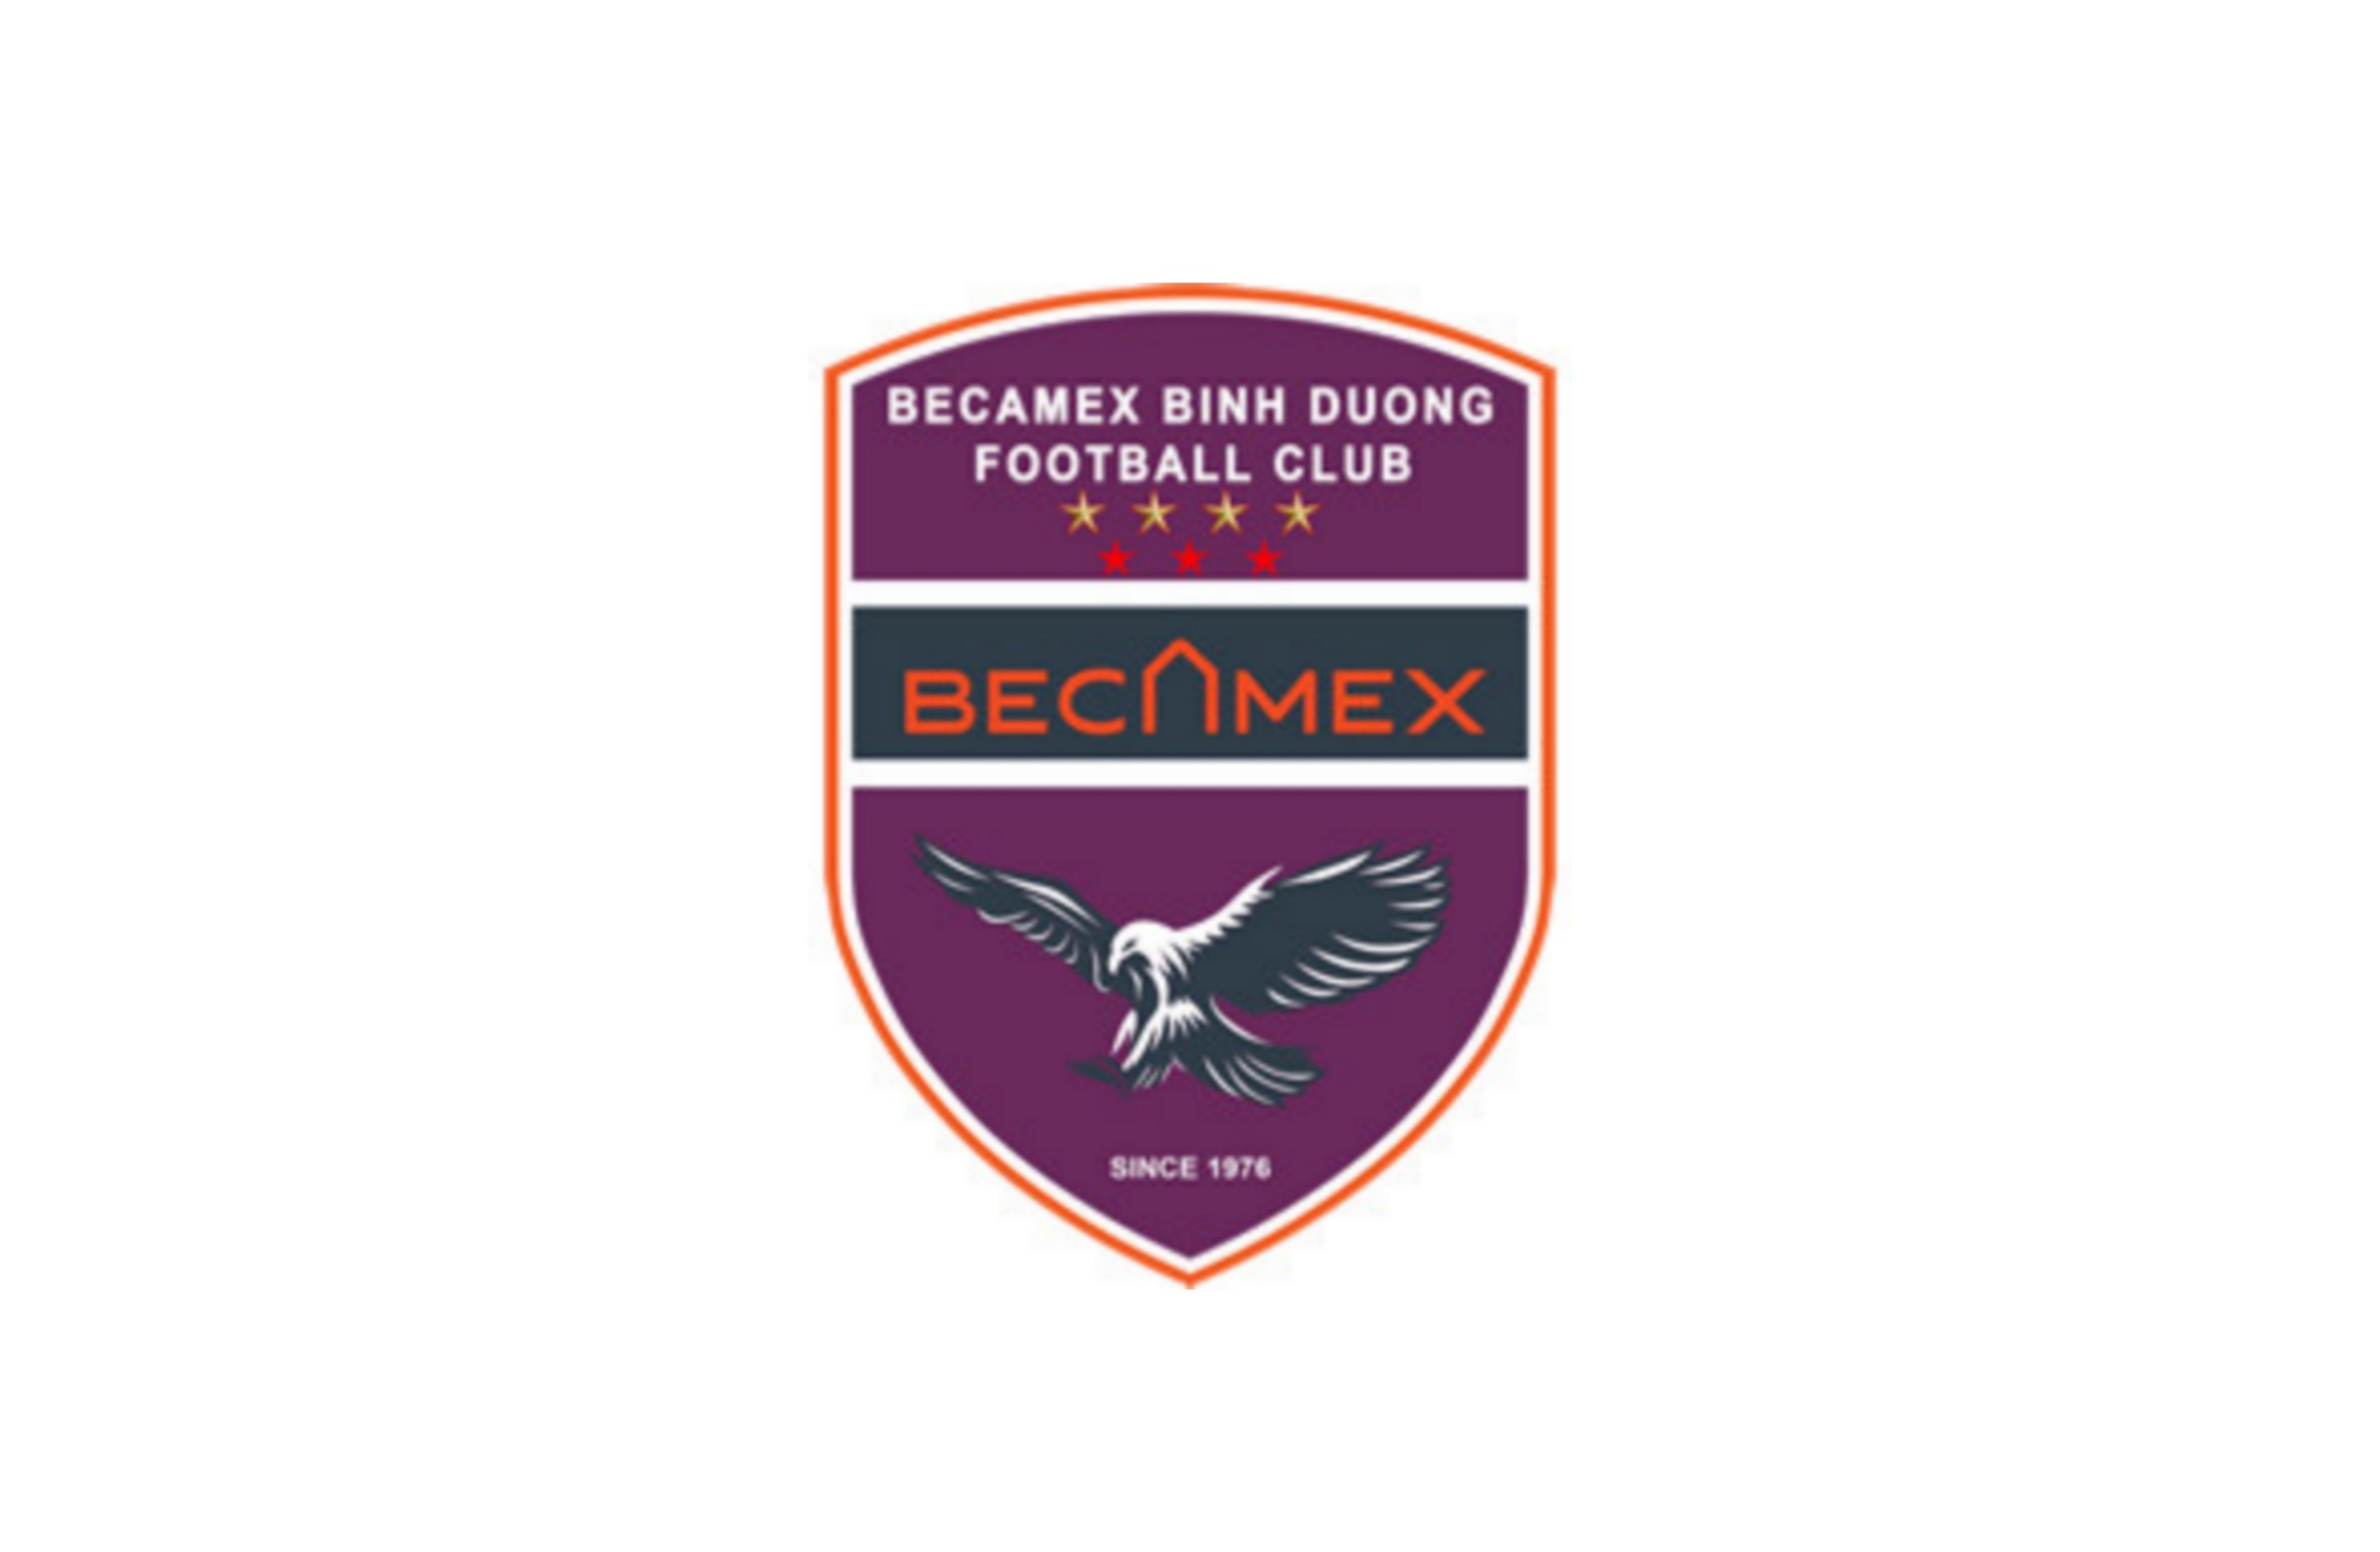 Biểu tượng logo của câu lạc bộ Becamex Bình Dương